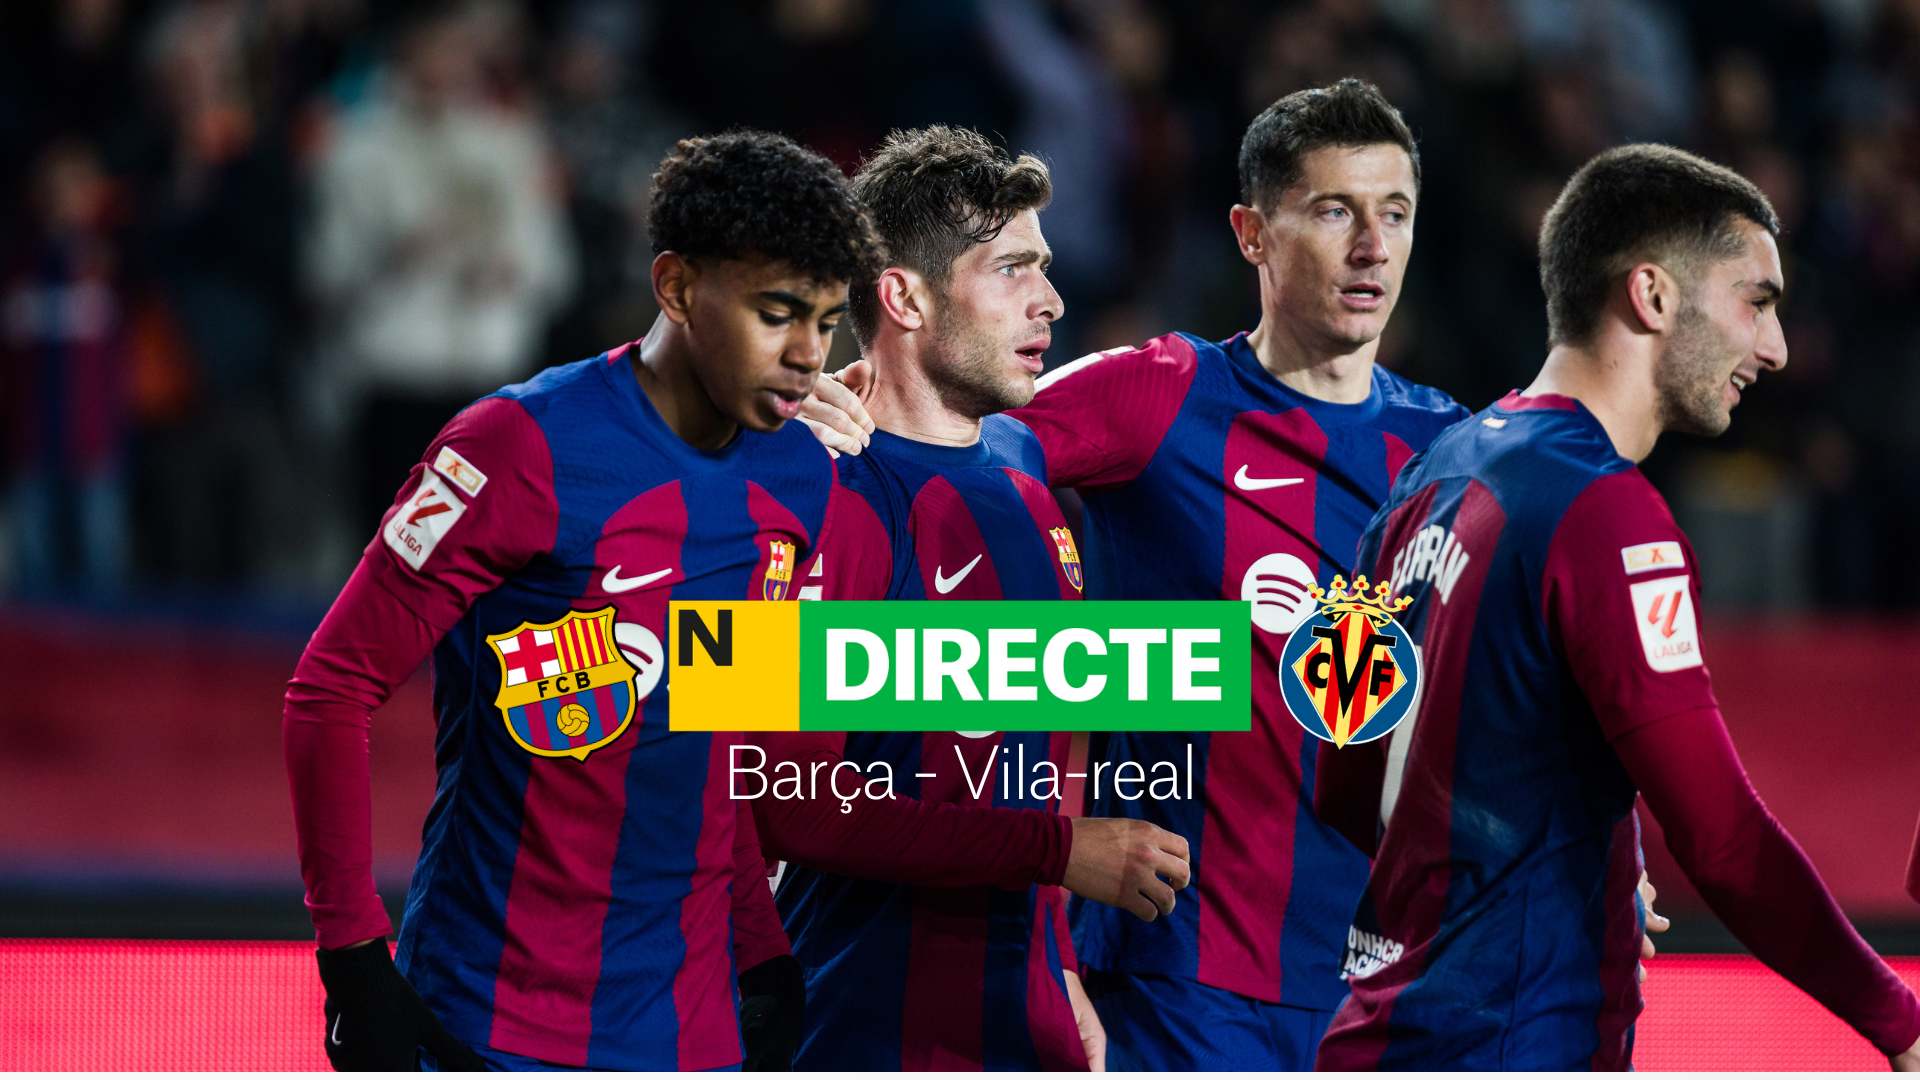 Barça - Vila-real de LaLiga EA Sports, DIRECTE | Resultat, resum i gols